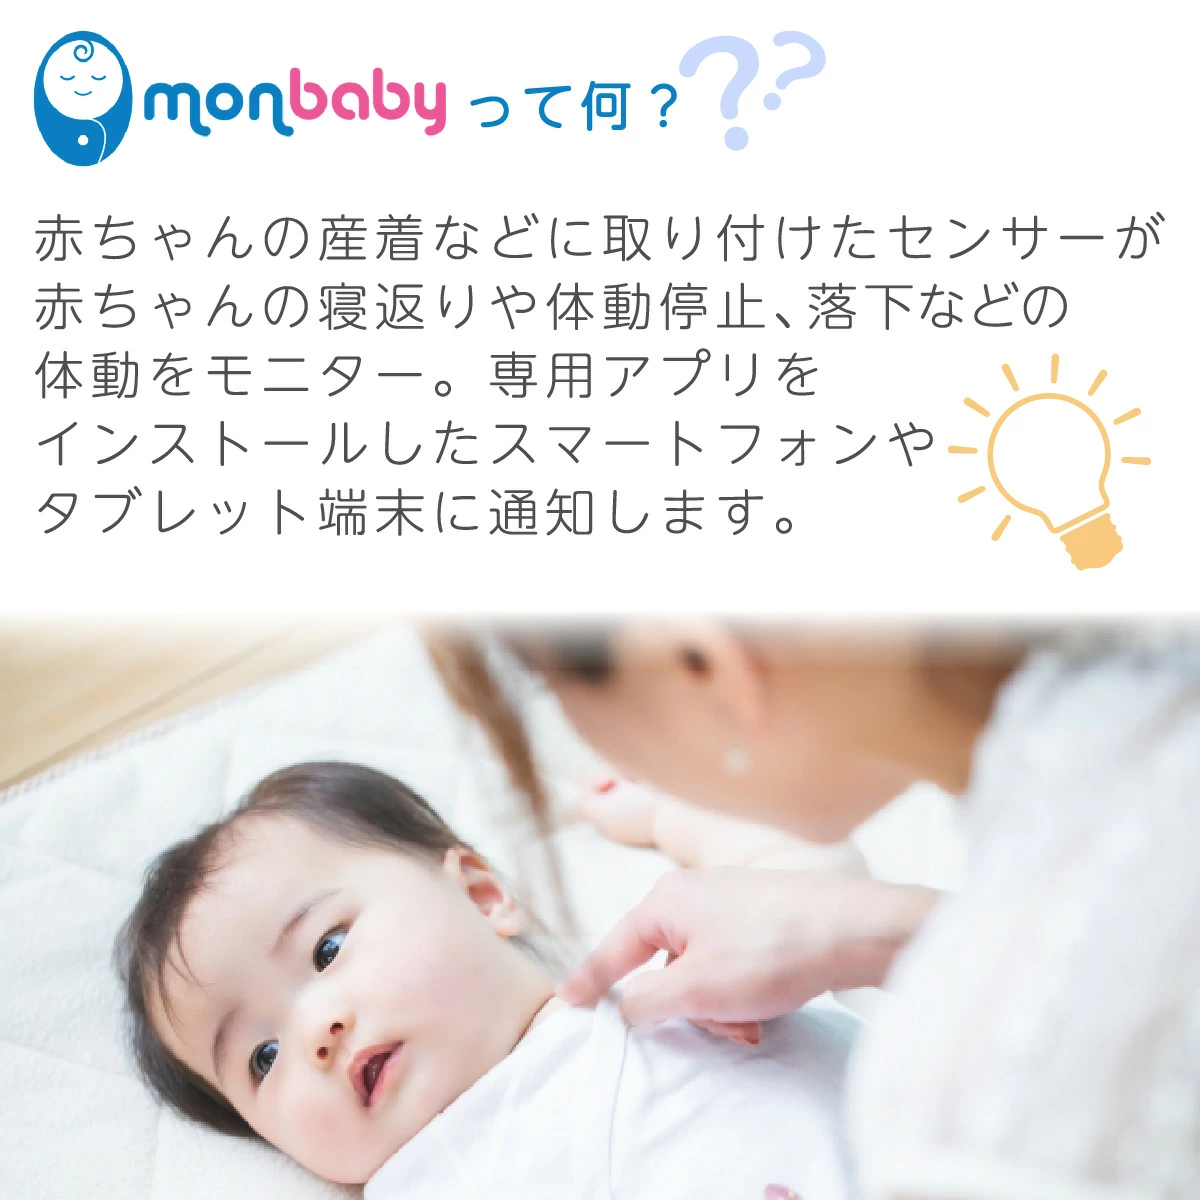 MonBaby スマートボタン体動センサー - 株式会社プレシャスケア 